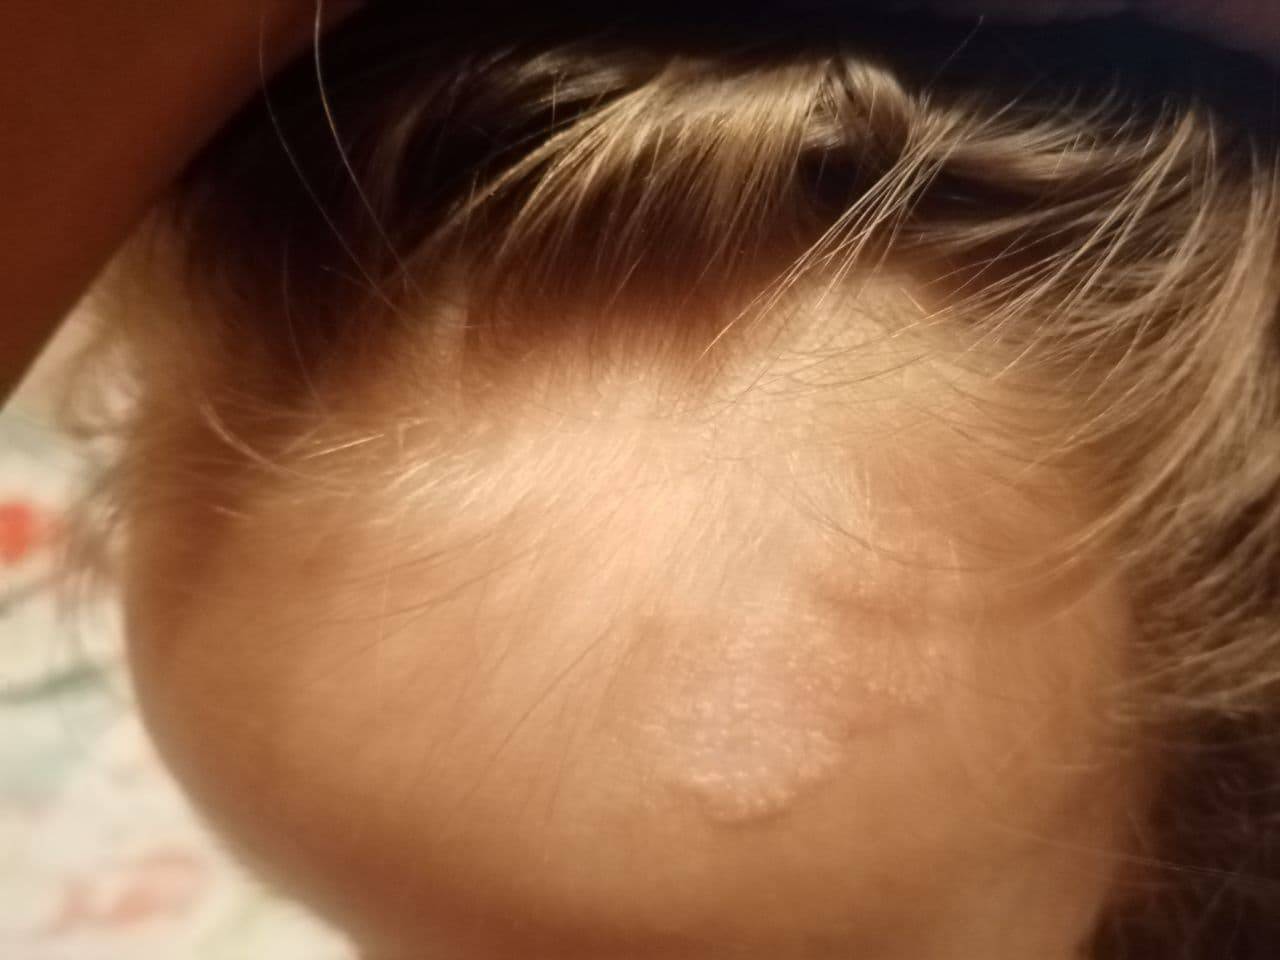 Мелкие водянистые пузырьки на коже у ребенка фото с описанием